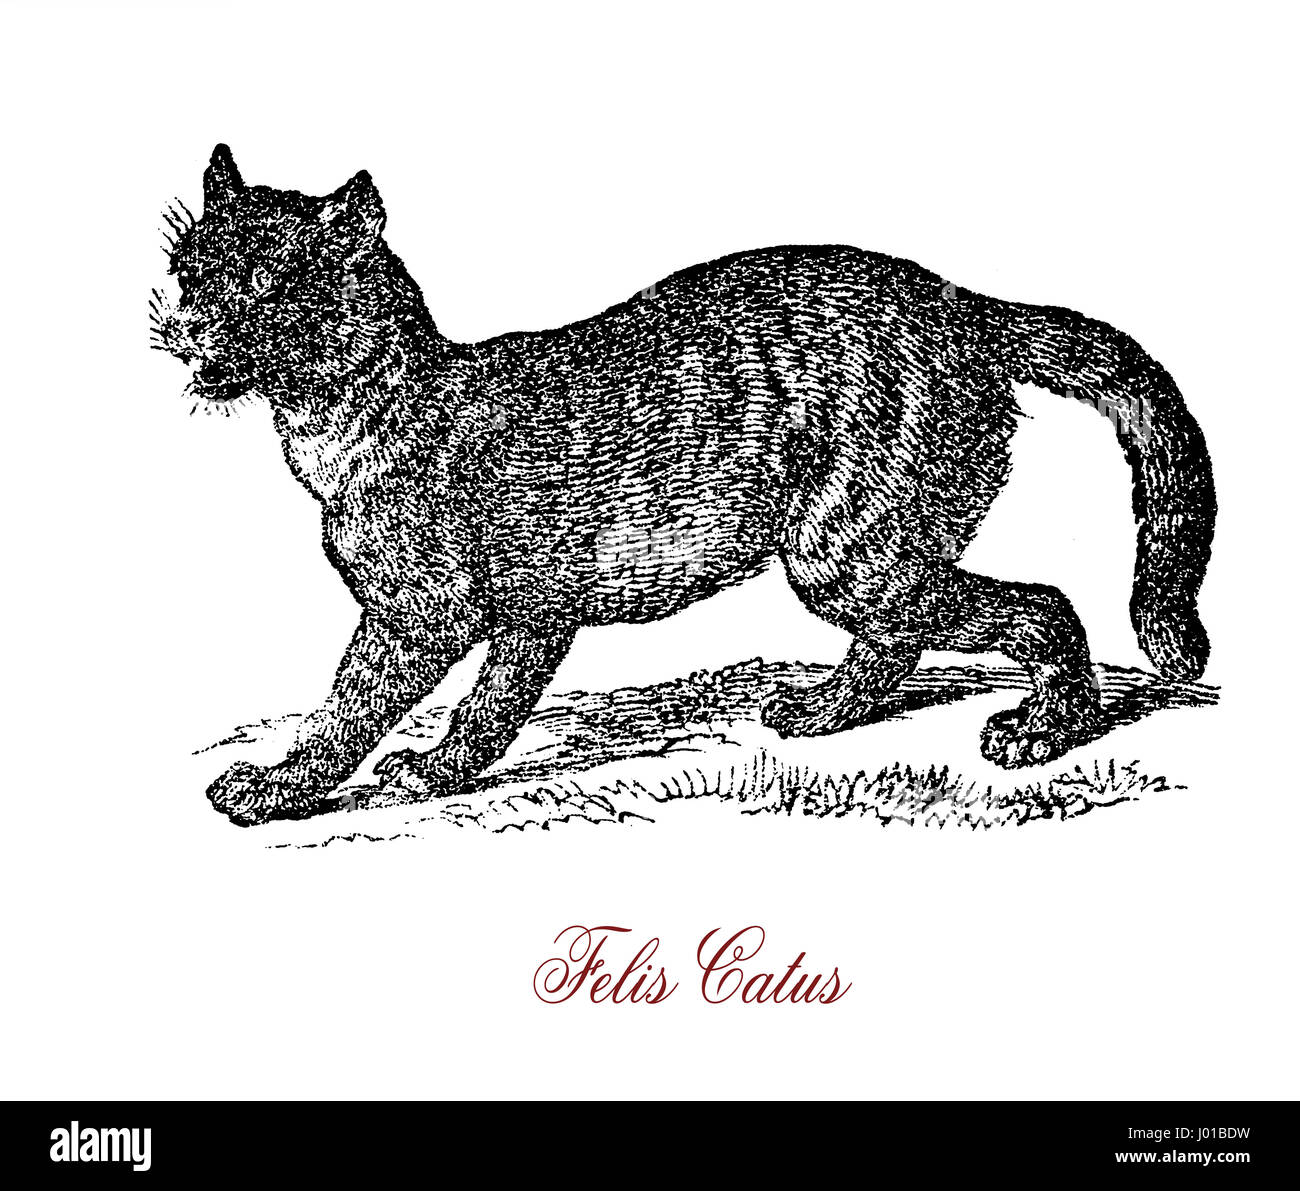 Il gatto selvatico (Felis silvestris) è un piccolo gatto nativa per la maggior parte dell'Africa, Europa e Sud-ovest e in Asia centrale. Incroci di wildcat e il gatto domestico (Felis silvestris catus) possono verificarsi mettendo così in pericolo la conservazione della specie. Foto Stock